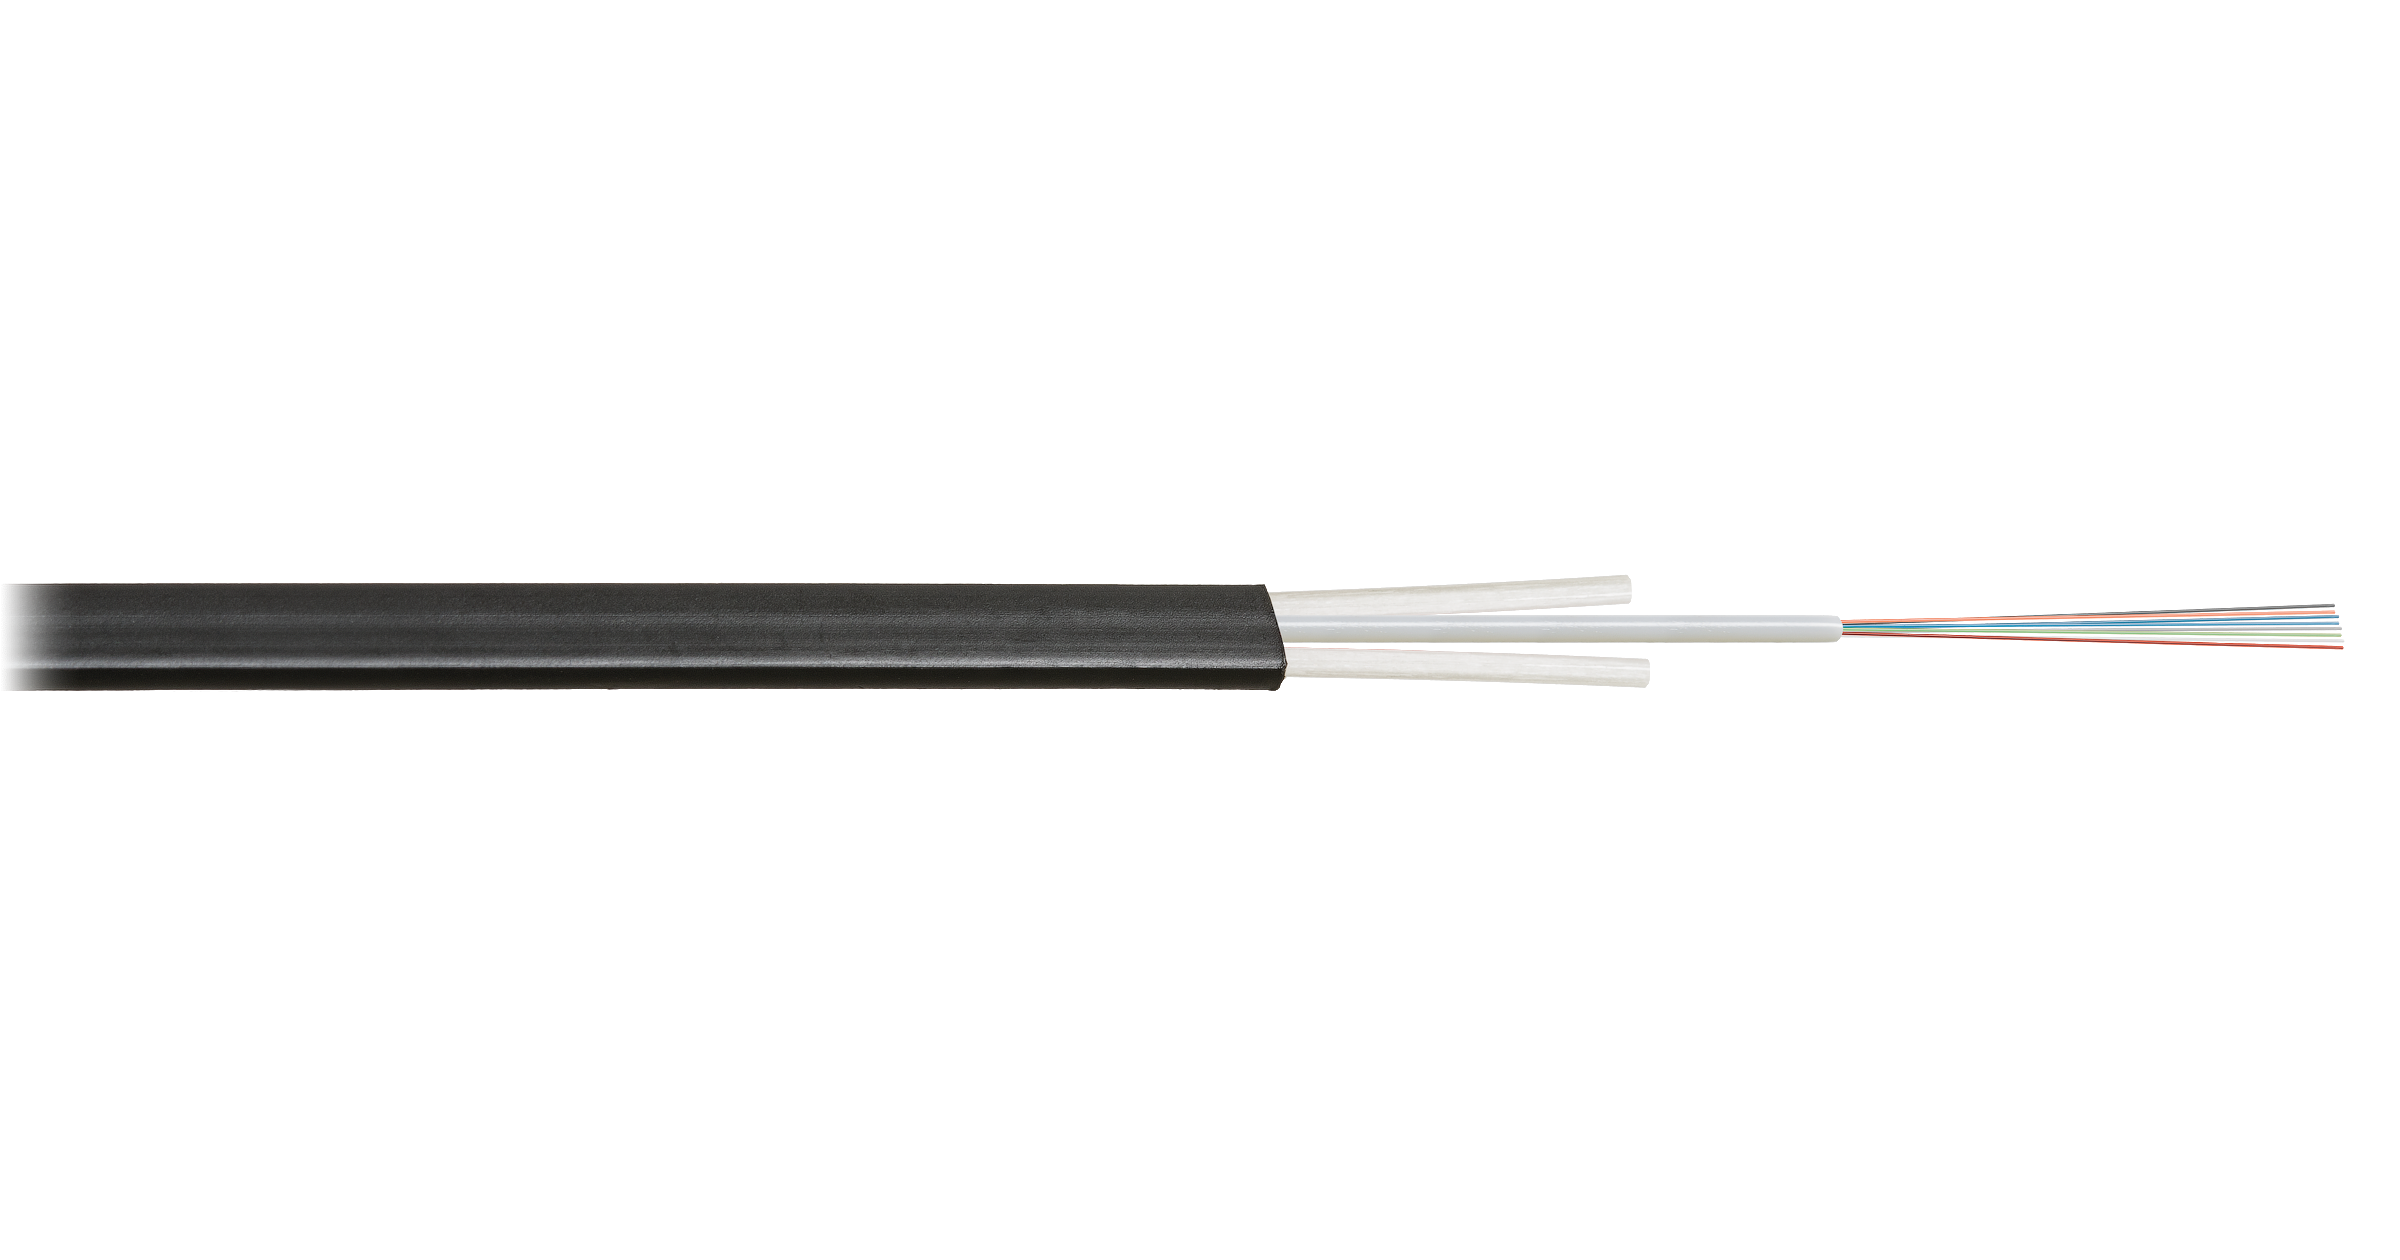 Кабель оптический NIKOLAN одномодовый, 9/125мкм, G.652.D & G.657.A1, 1 волокно, 1км, черный, для отгрузки требуется барабан, приобретается отдельно (NKL-F-001A1D-01B-BK)